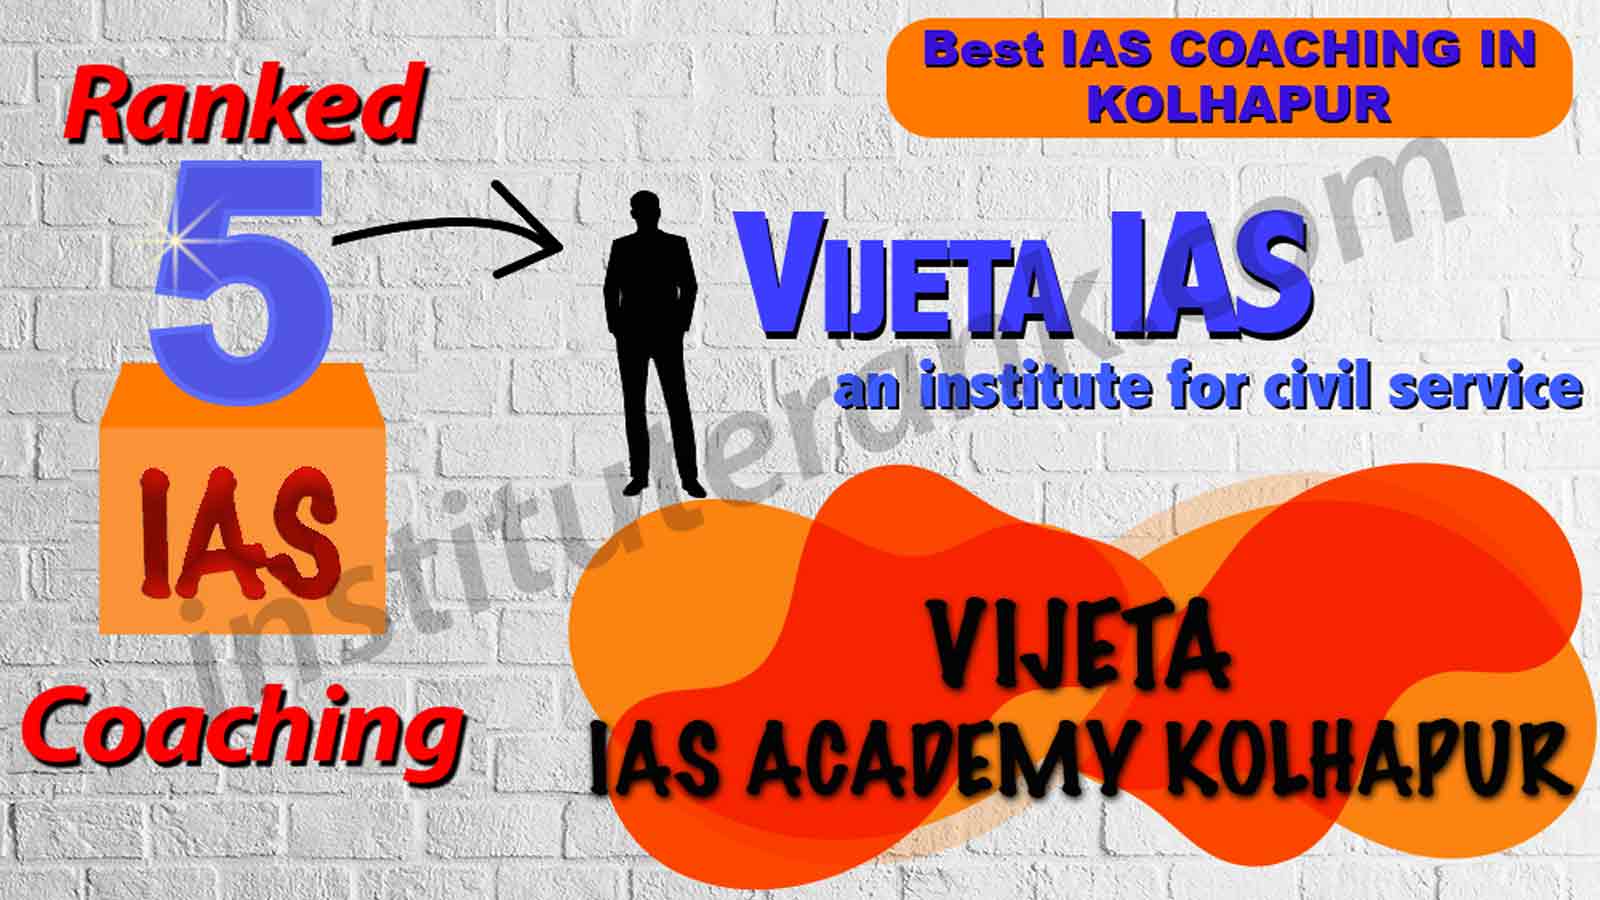 Best IAS Coaching of Kolhapur